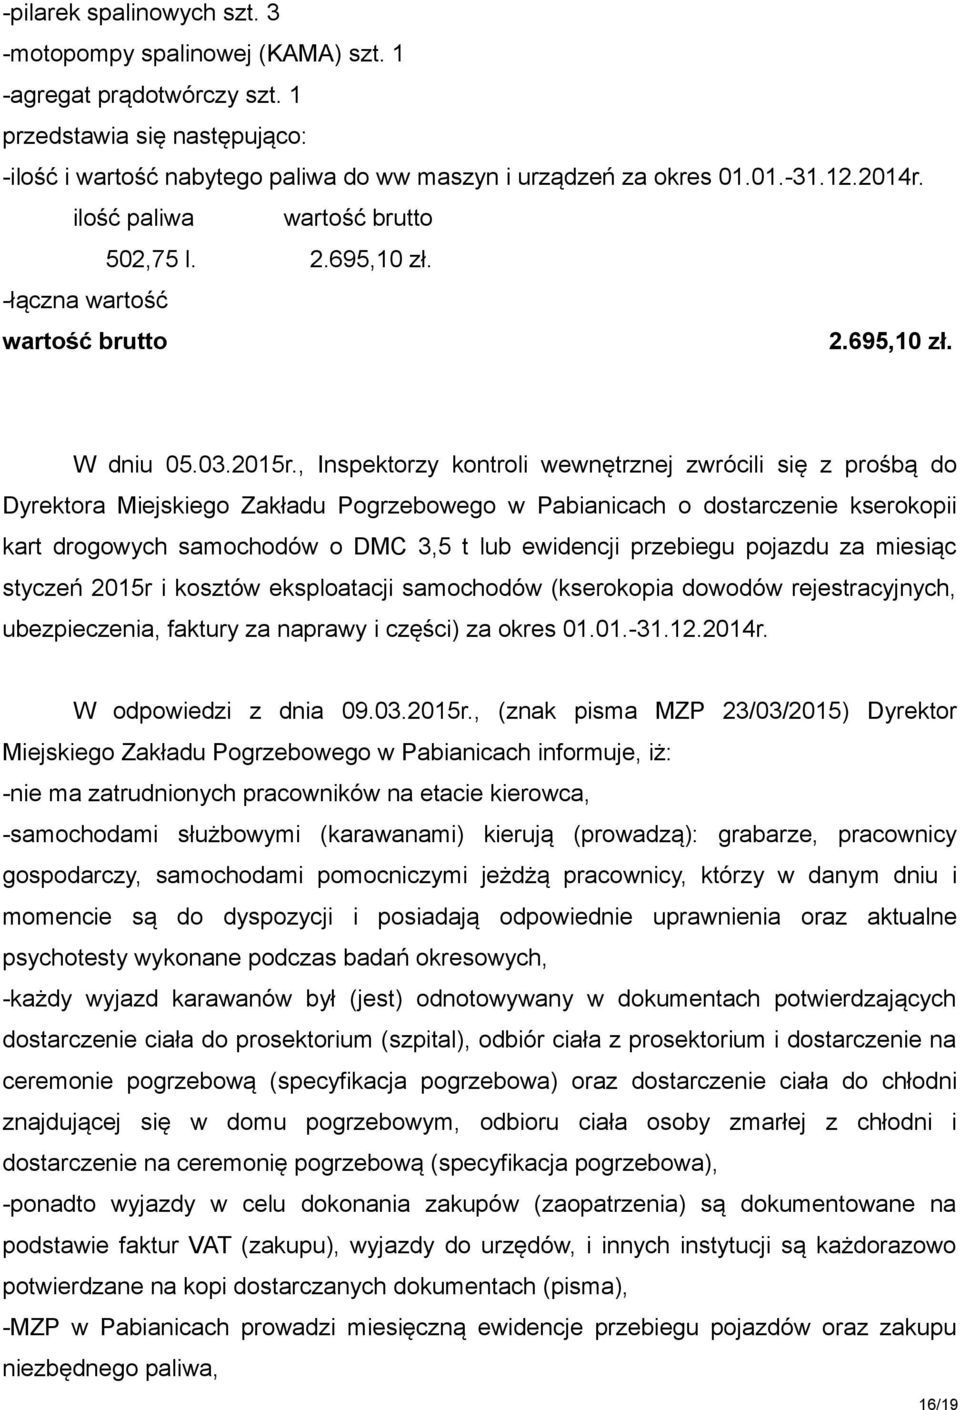 , Inspektorzy kontroli wewnętrznej zwrócili się z prośbą do Dyrektora Miejskiego Zakładu Pogrzebowego w Pabianicach o dostarczenie kserokopii kart drogowych samochodów o DMC 3,5 t lub ewidencji